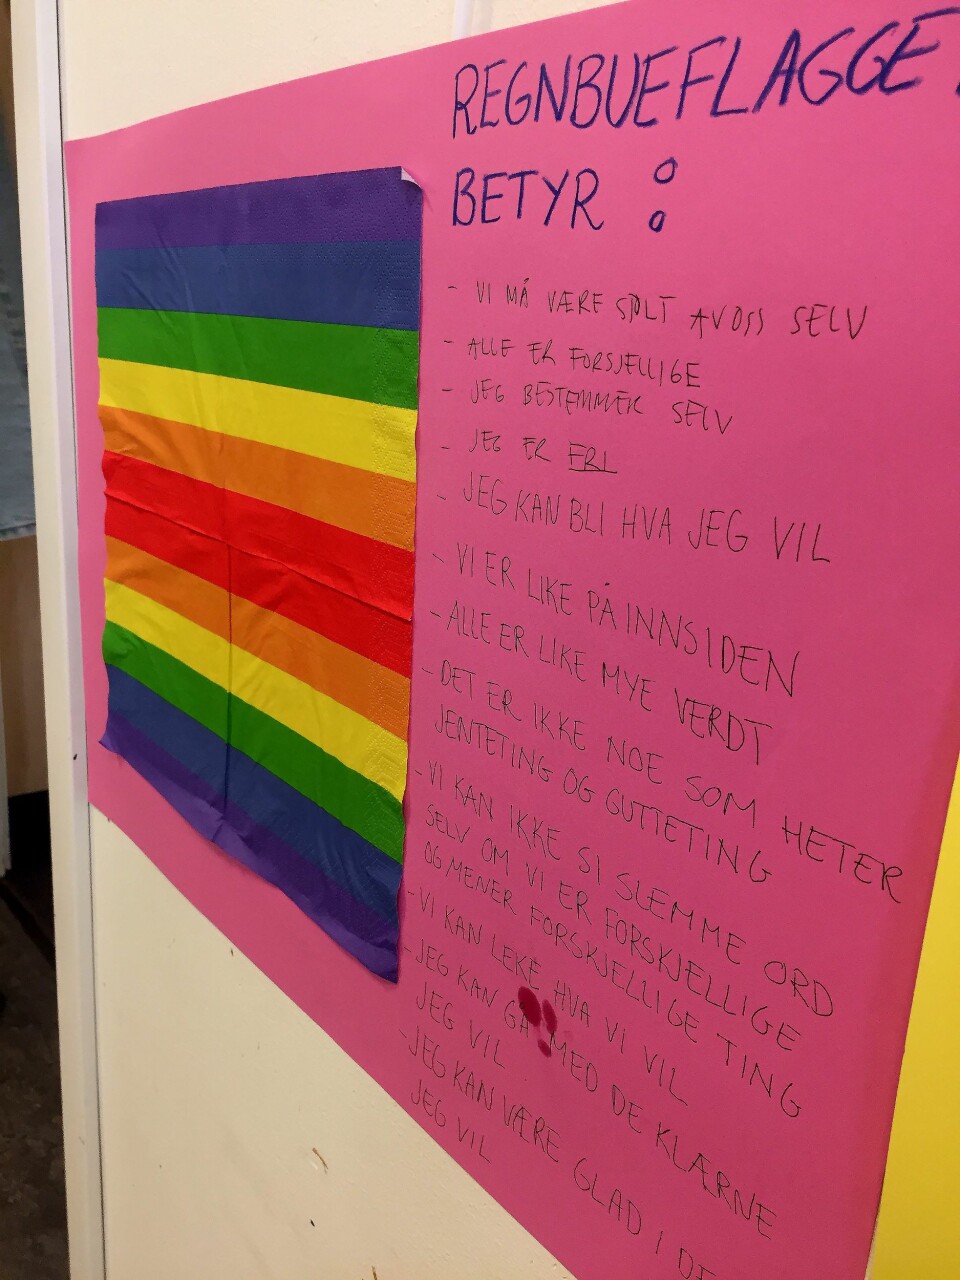 Det er verdiene i regnbueflagget barnehagen vektlegger mest - og den avviser at det er homokamp det dreier seg om.